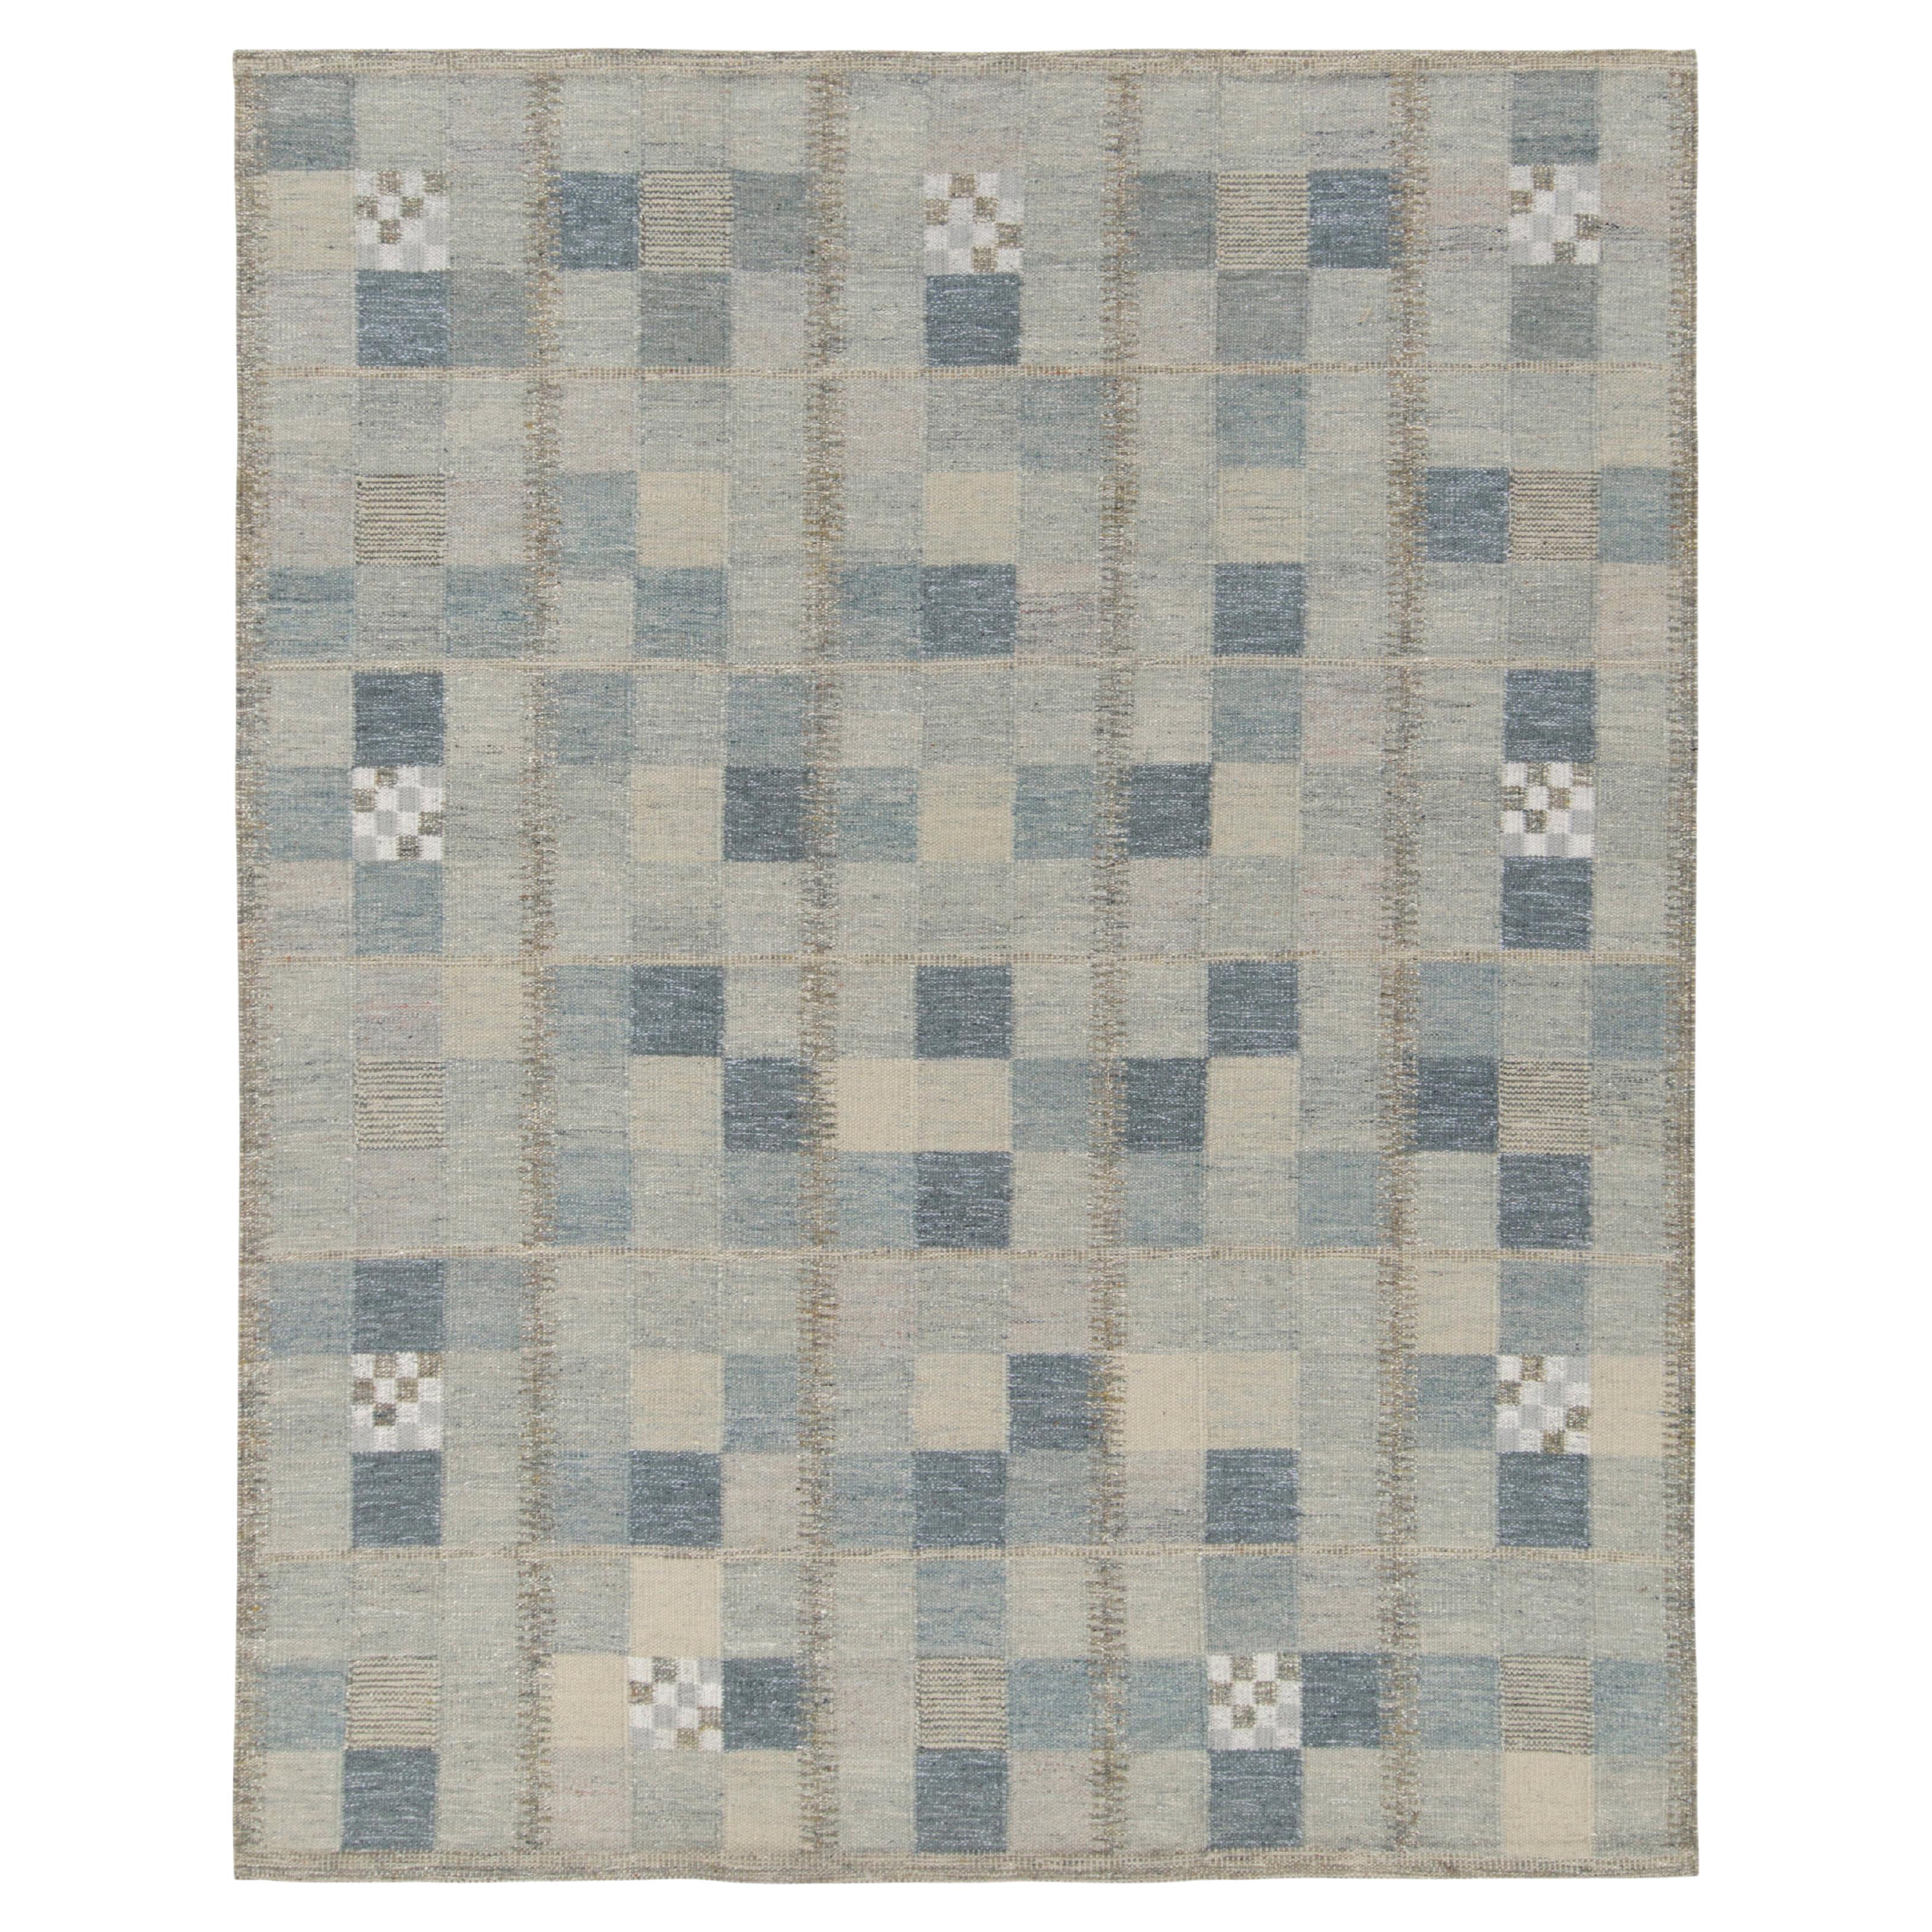 Teppich & Kelim-Teppich im skandinavischen Stil in Blau, Grau mit geometrischem Muster